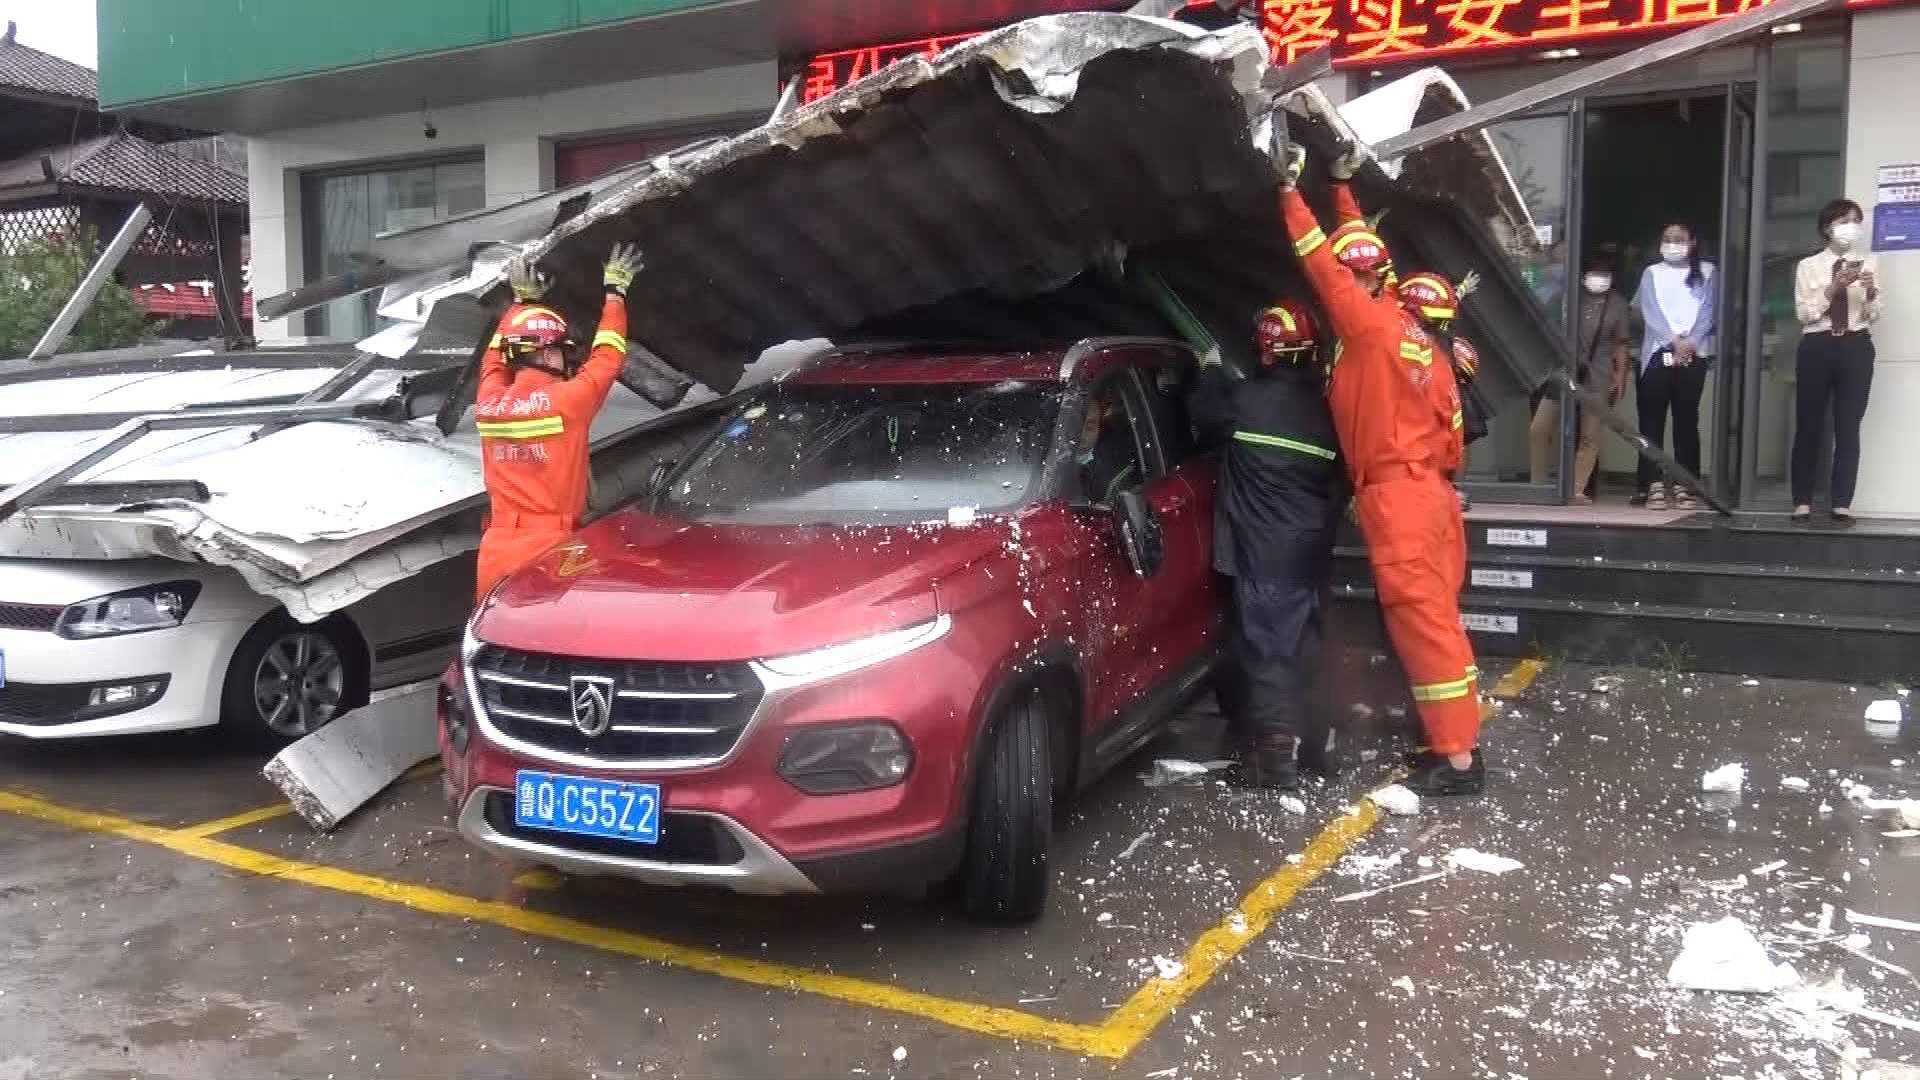 临沂受台风影响楼顶广告牌坠落4辆轿车被砸 消防员破拆广告牌排险情